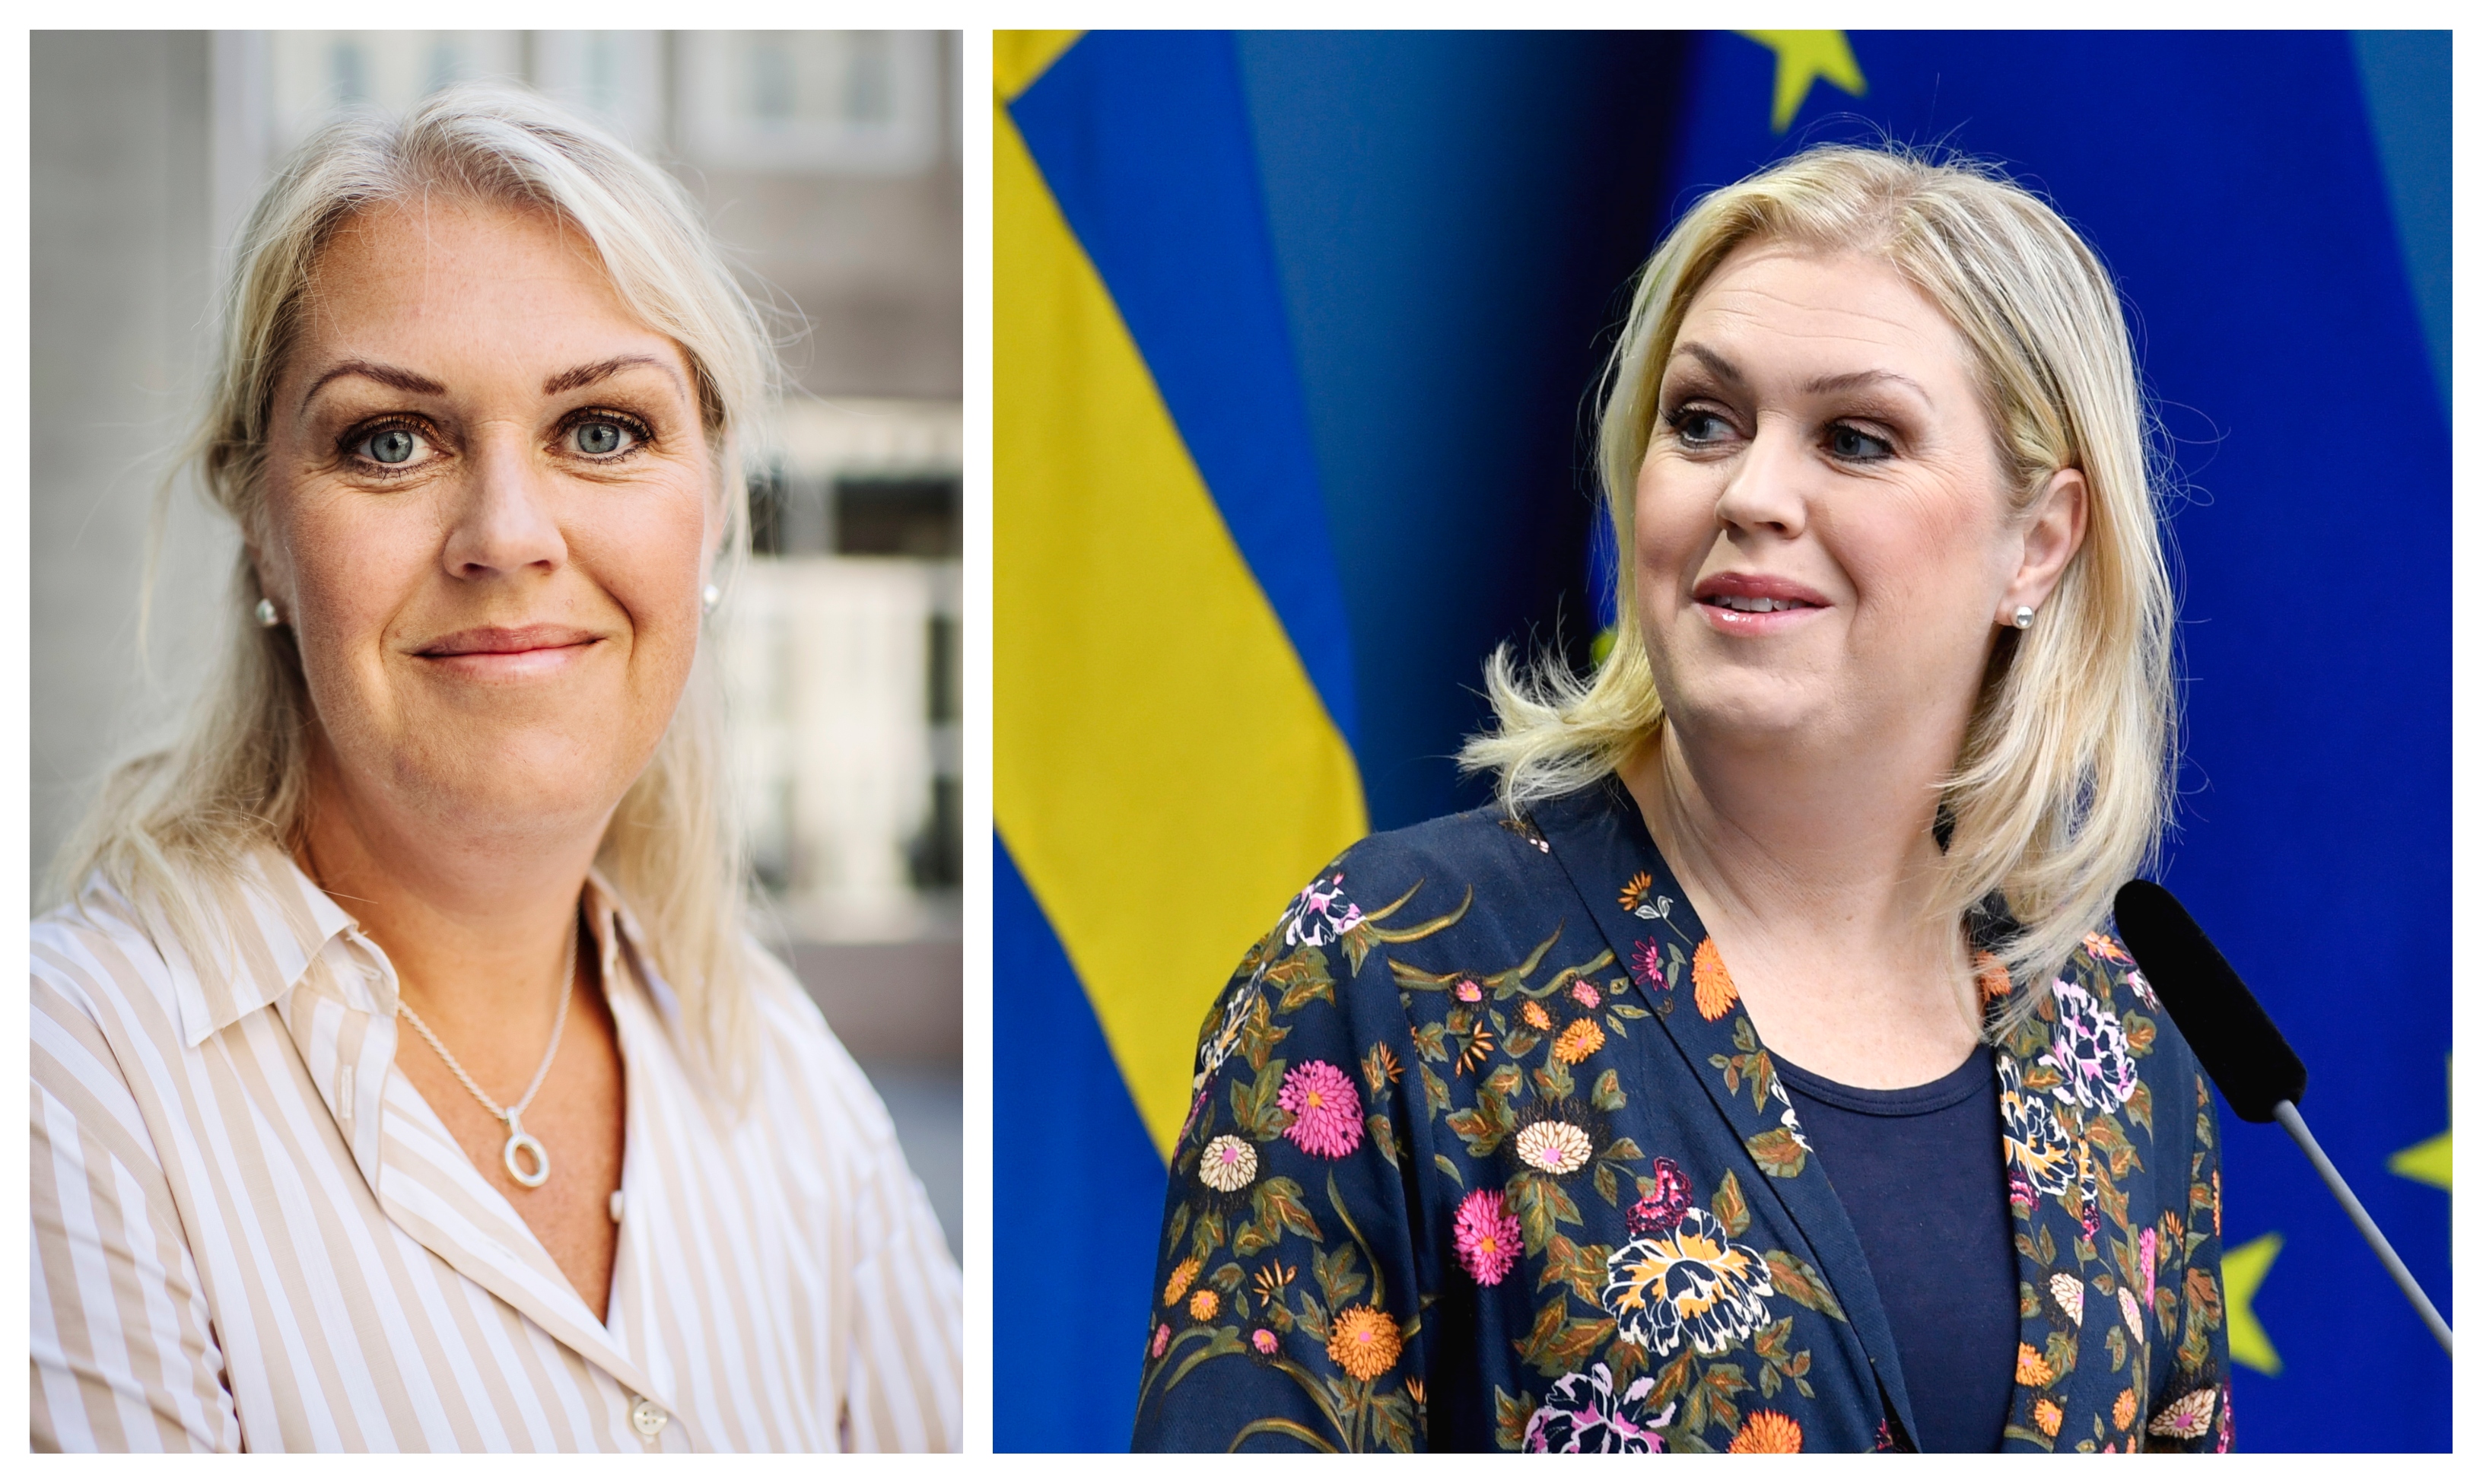 Nyheter24 listar sju fakta om Lena Hallengren (S).